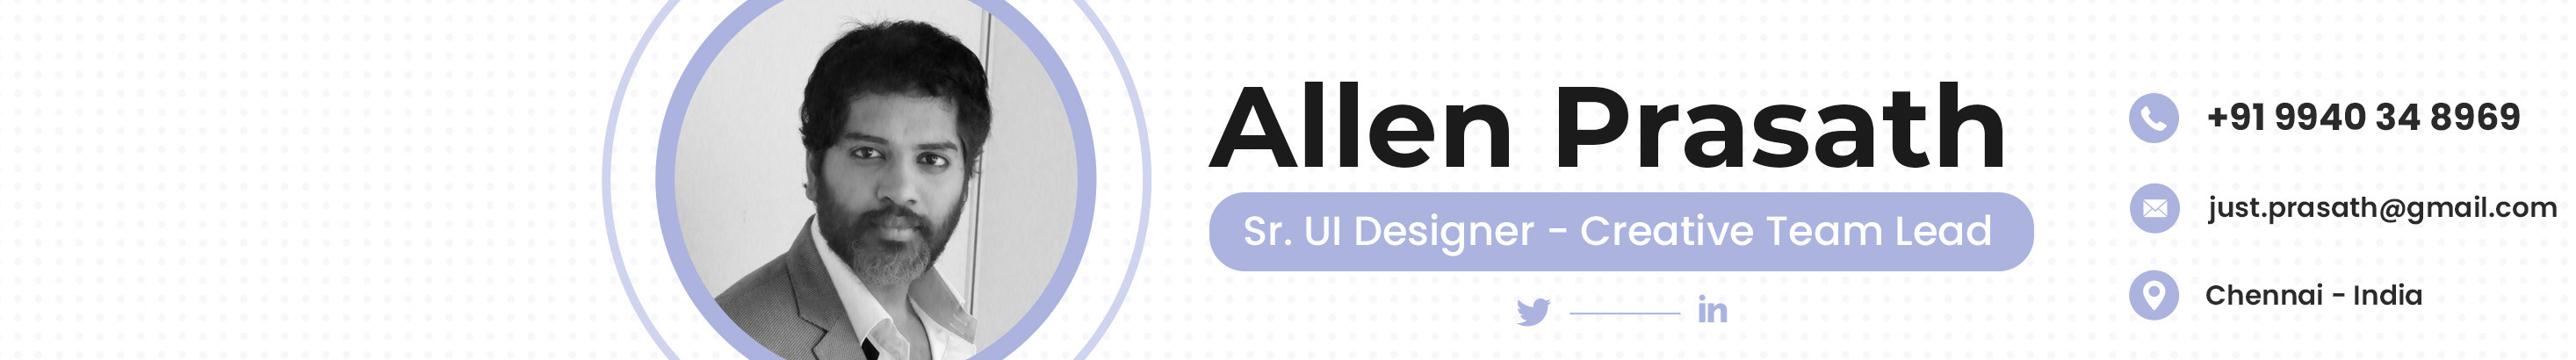 Allen Prasath's profile banner